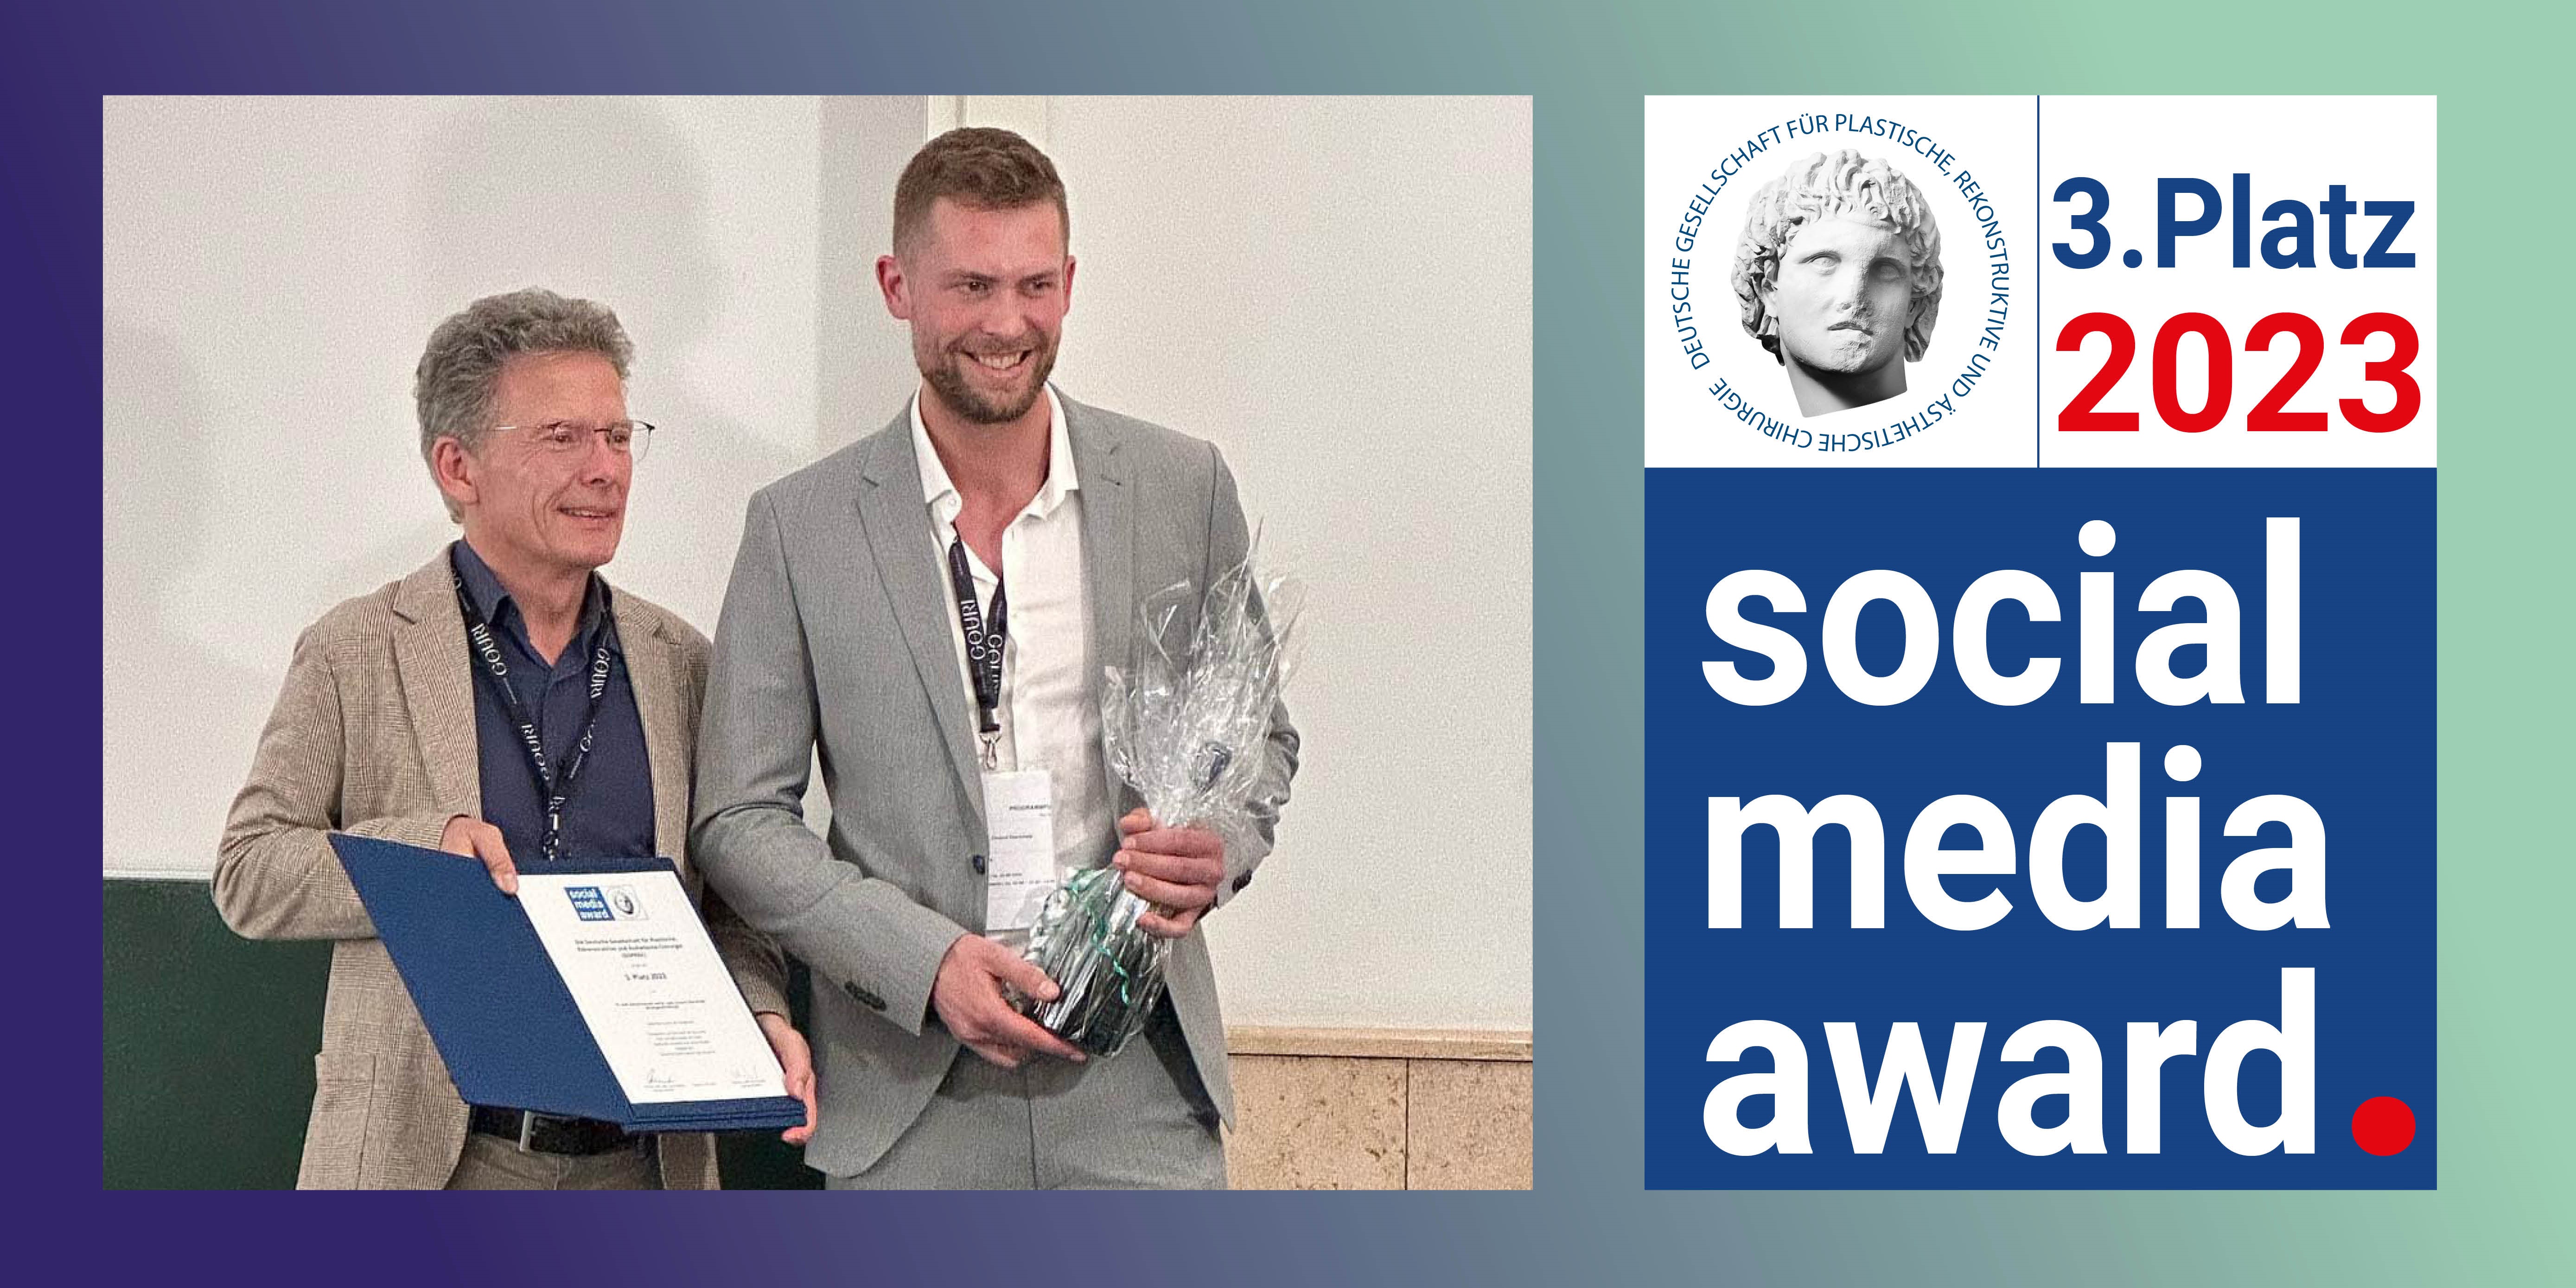 Zwei Männer mit einer Urkunde und einer Sektflasche, daneben der Text "social media award"